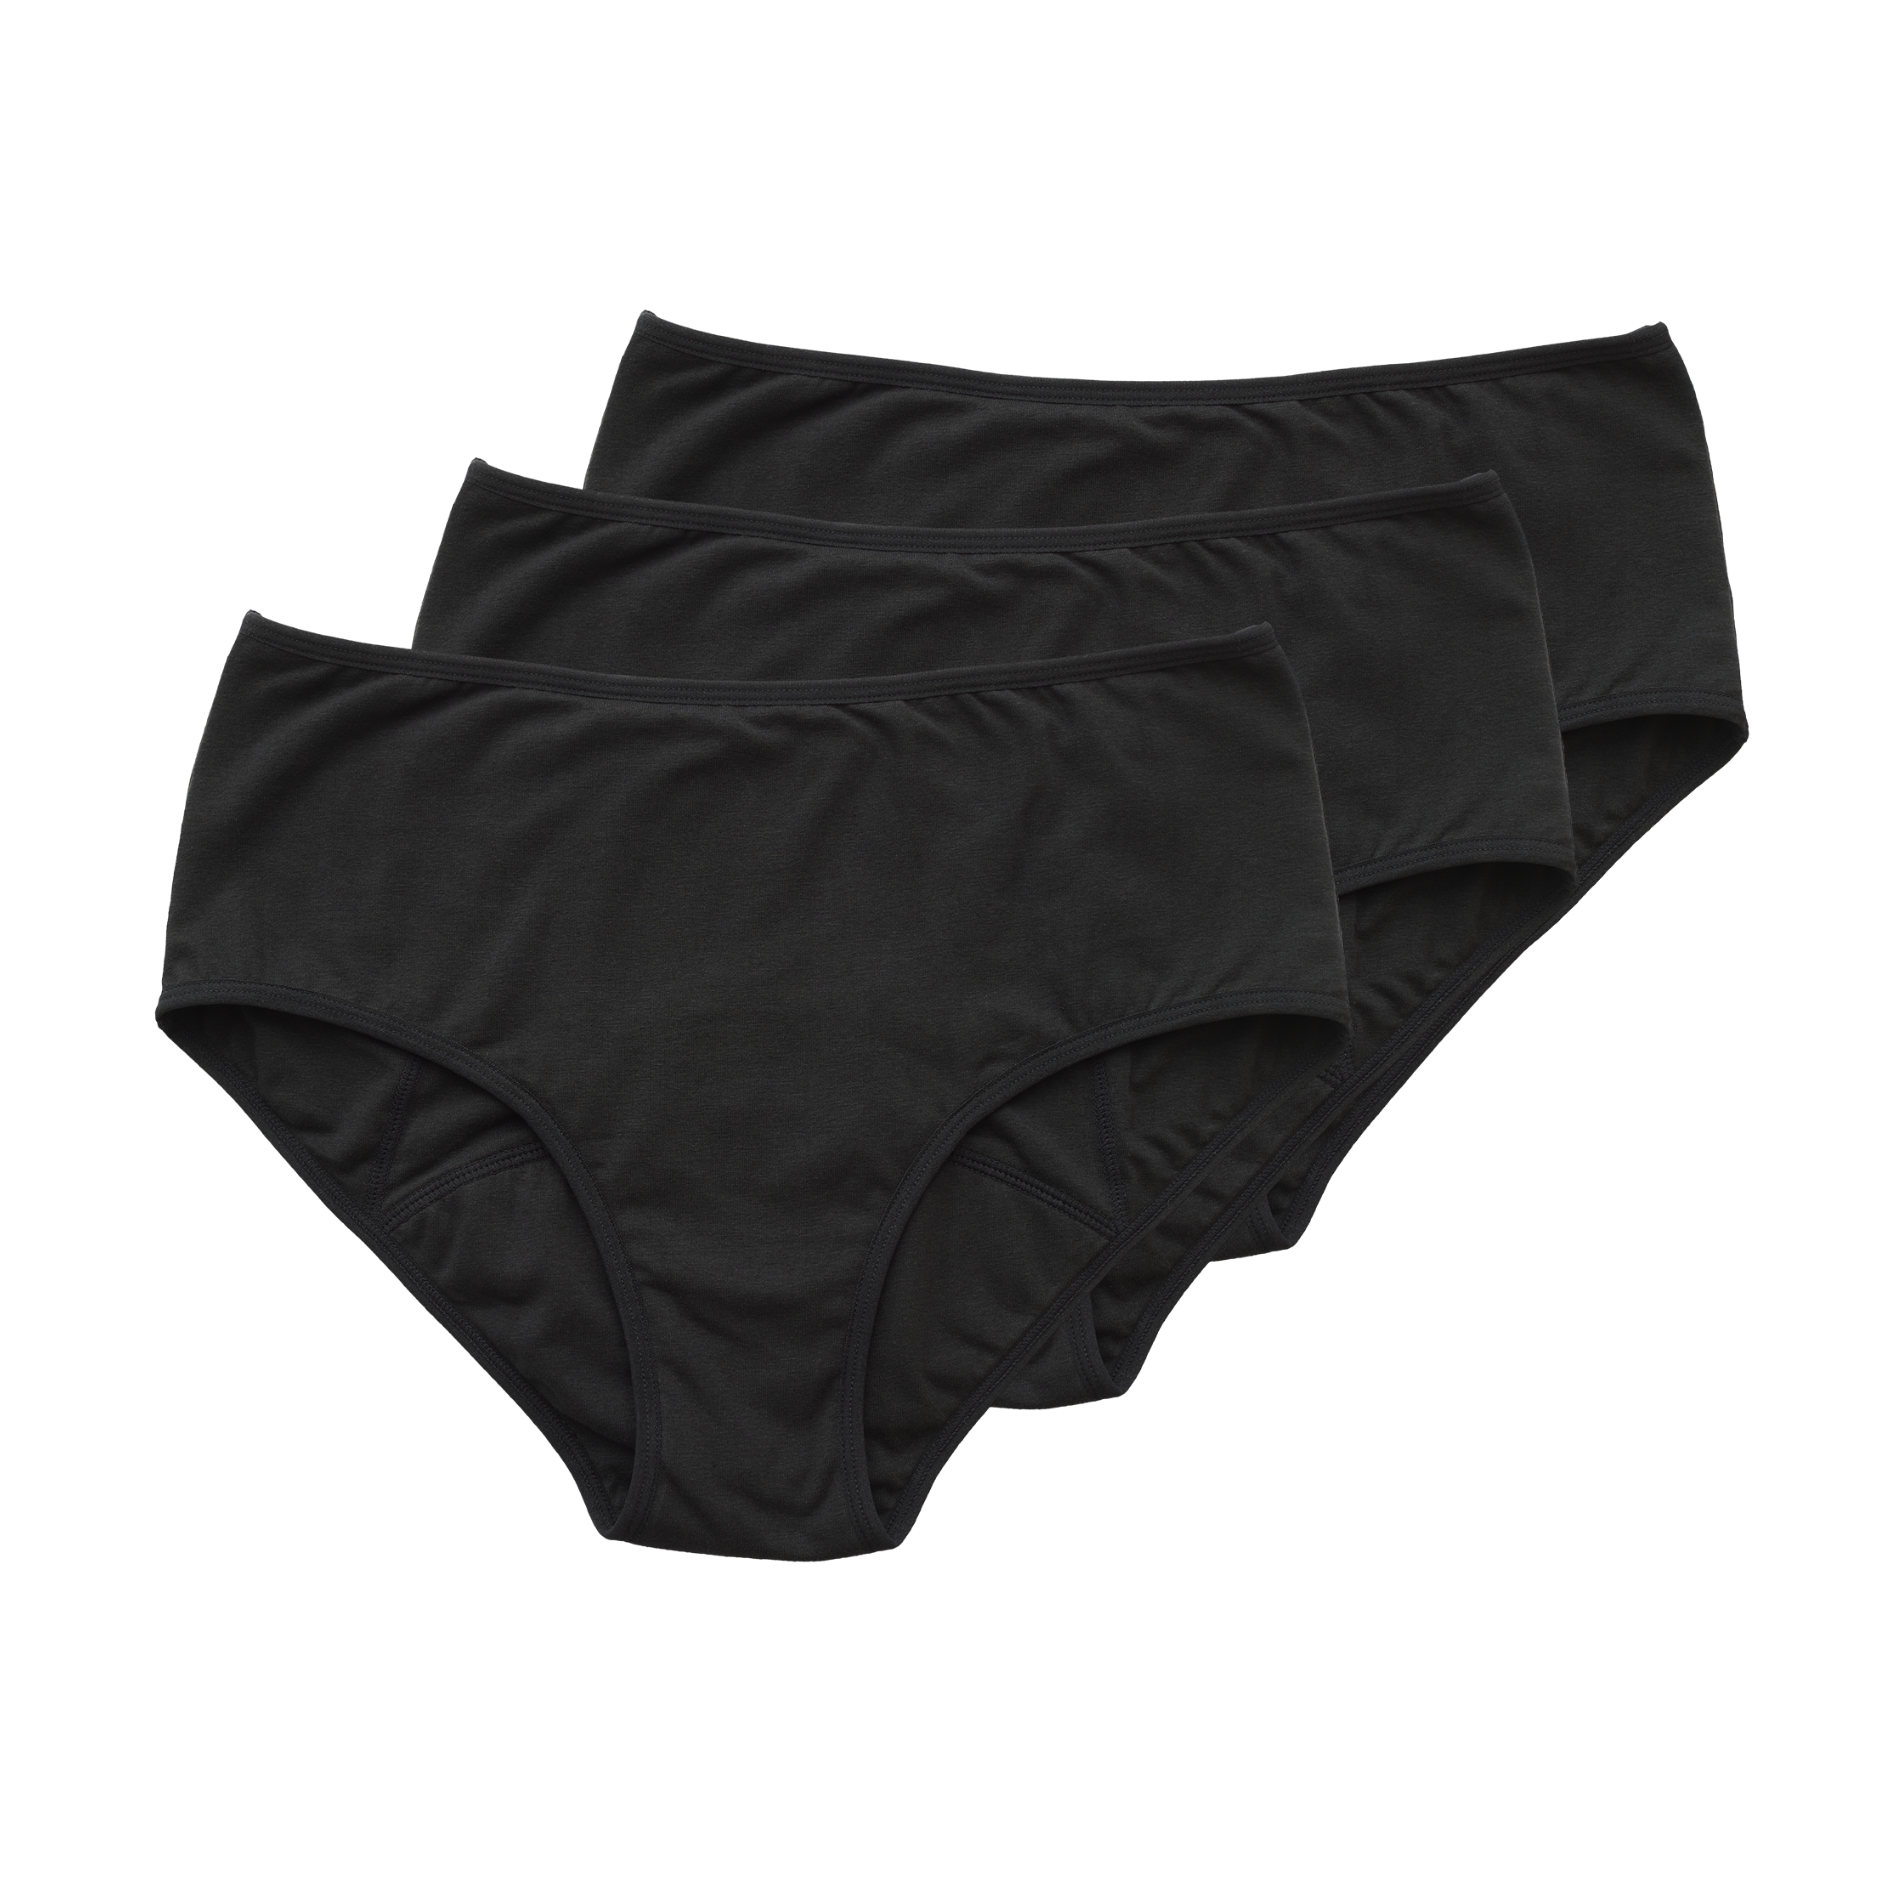 Flowies 3 PACK Sport Period Panties Multi Color Pack Black, Nude, Pink Eco  Menstrual Panty Bladder Leakage Panties Leakproof Underwear 